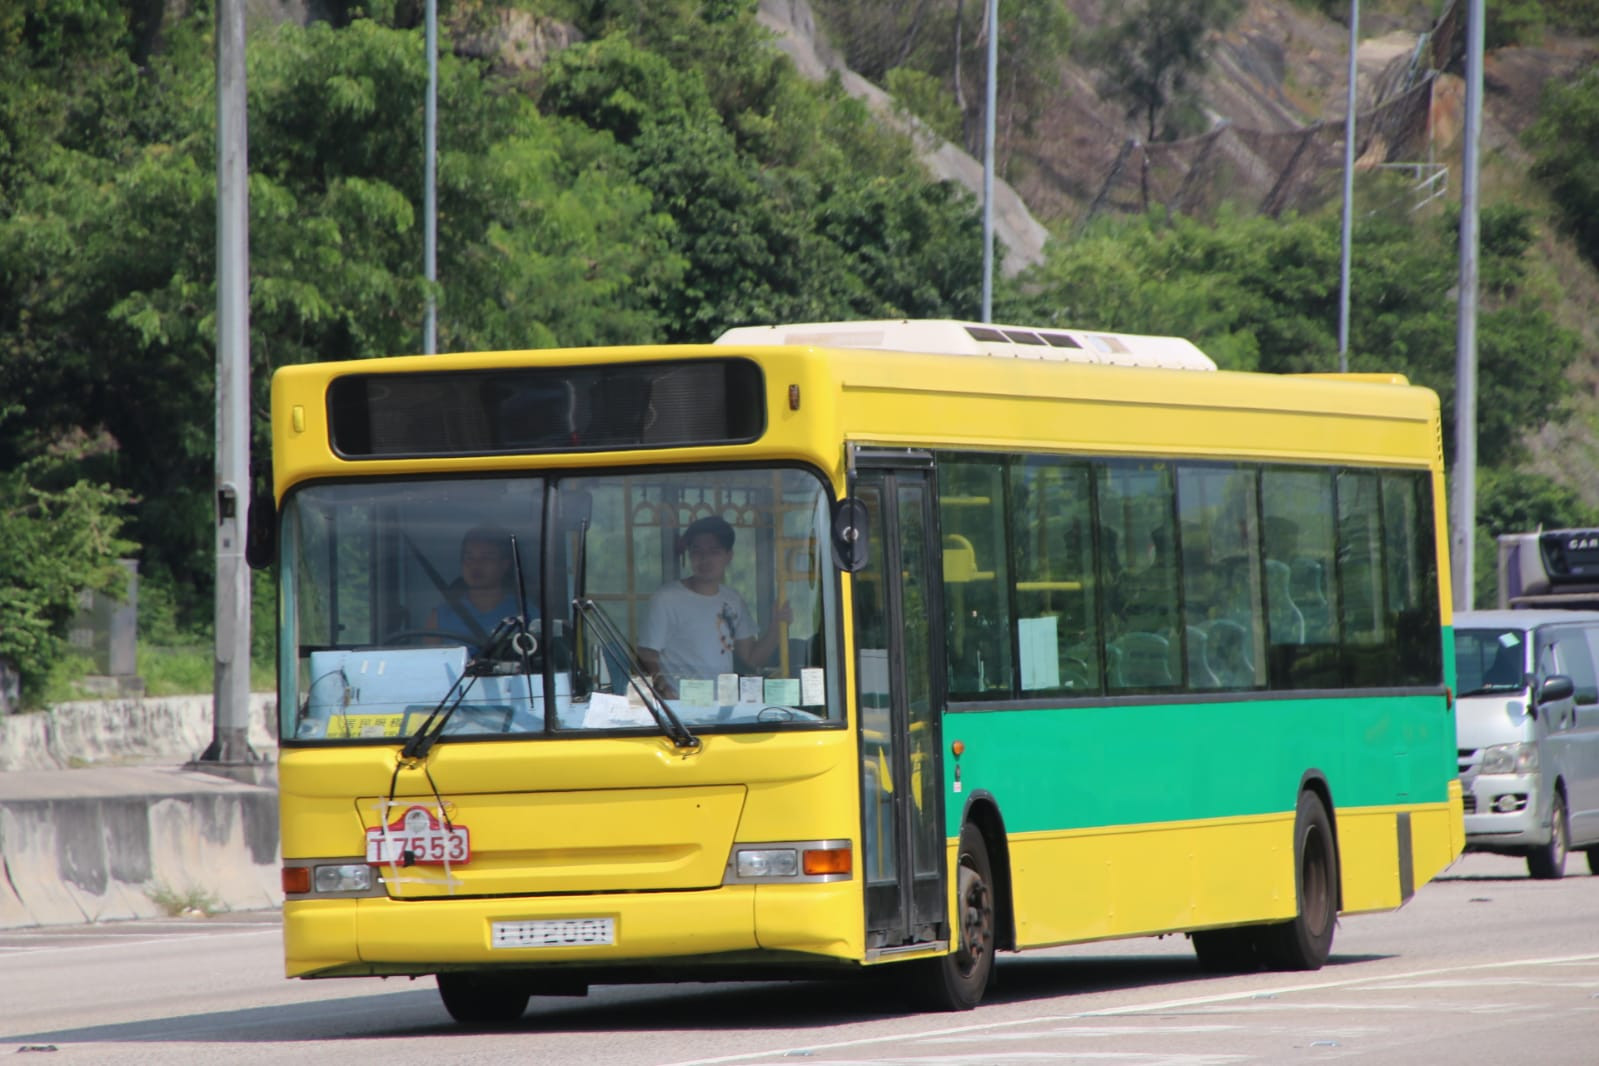 經屯門公路的331S - 巴士攝影作品貼圖區 (B3) - hkitalk.net 香港交通資訊網 - Powered by Discuz!